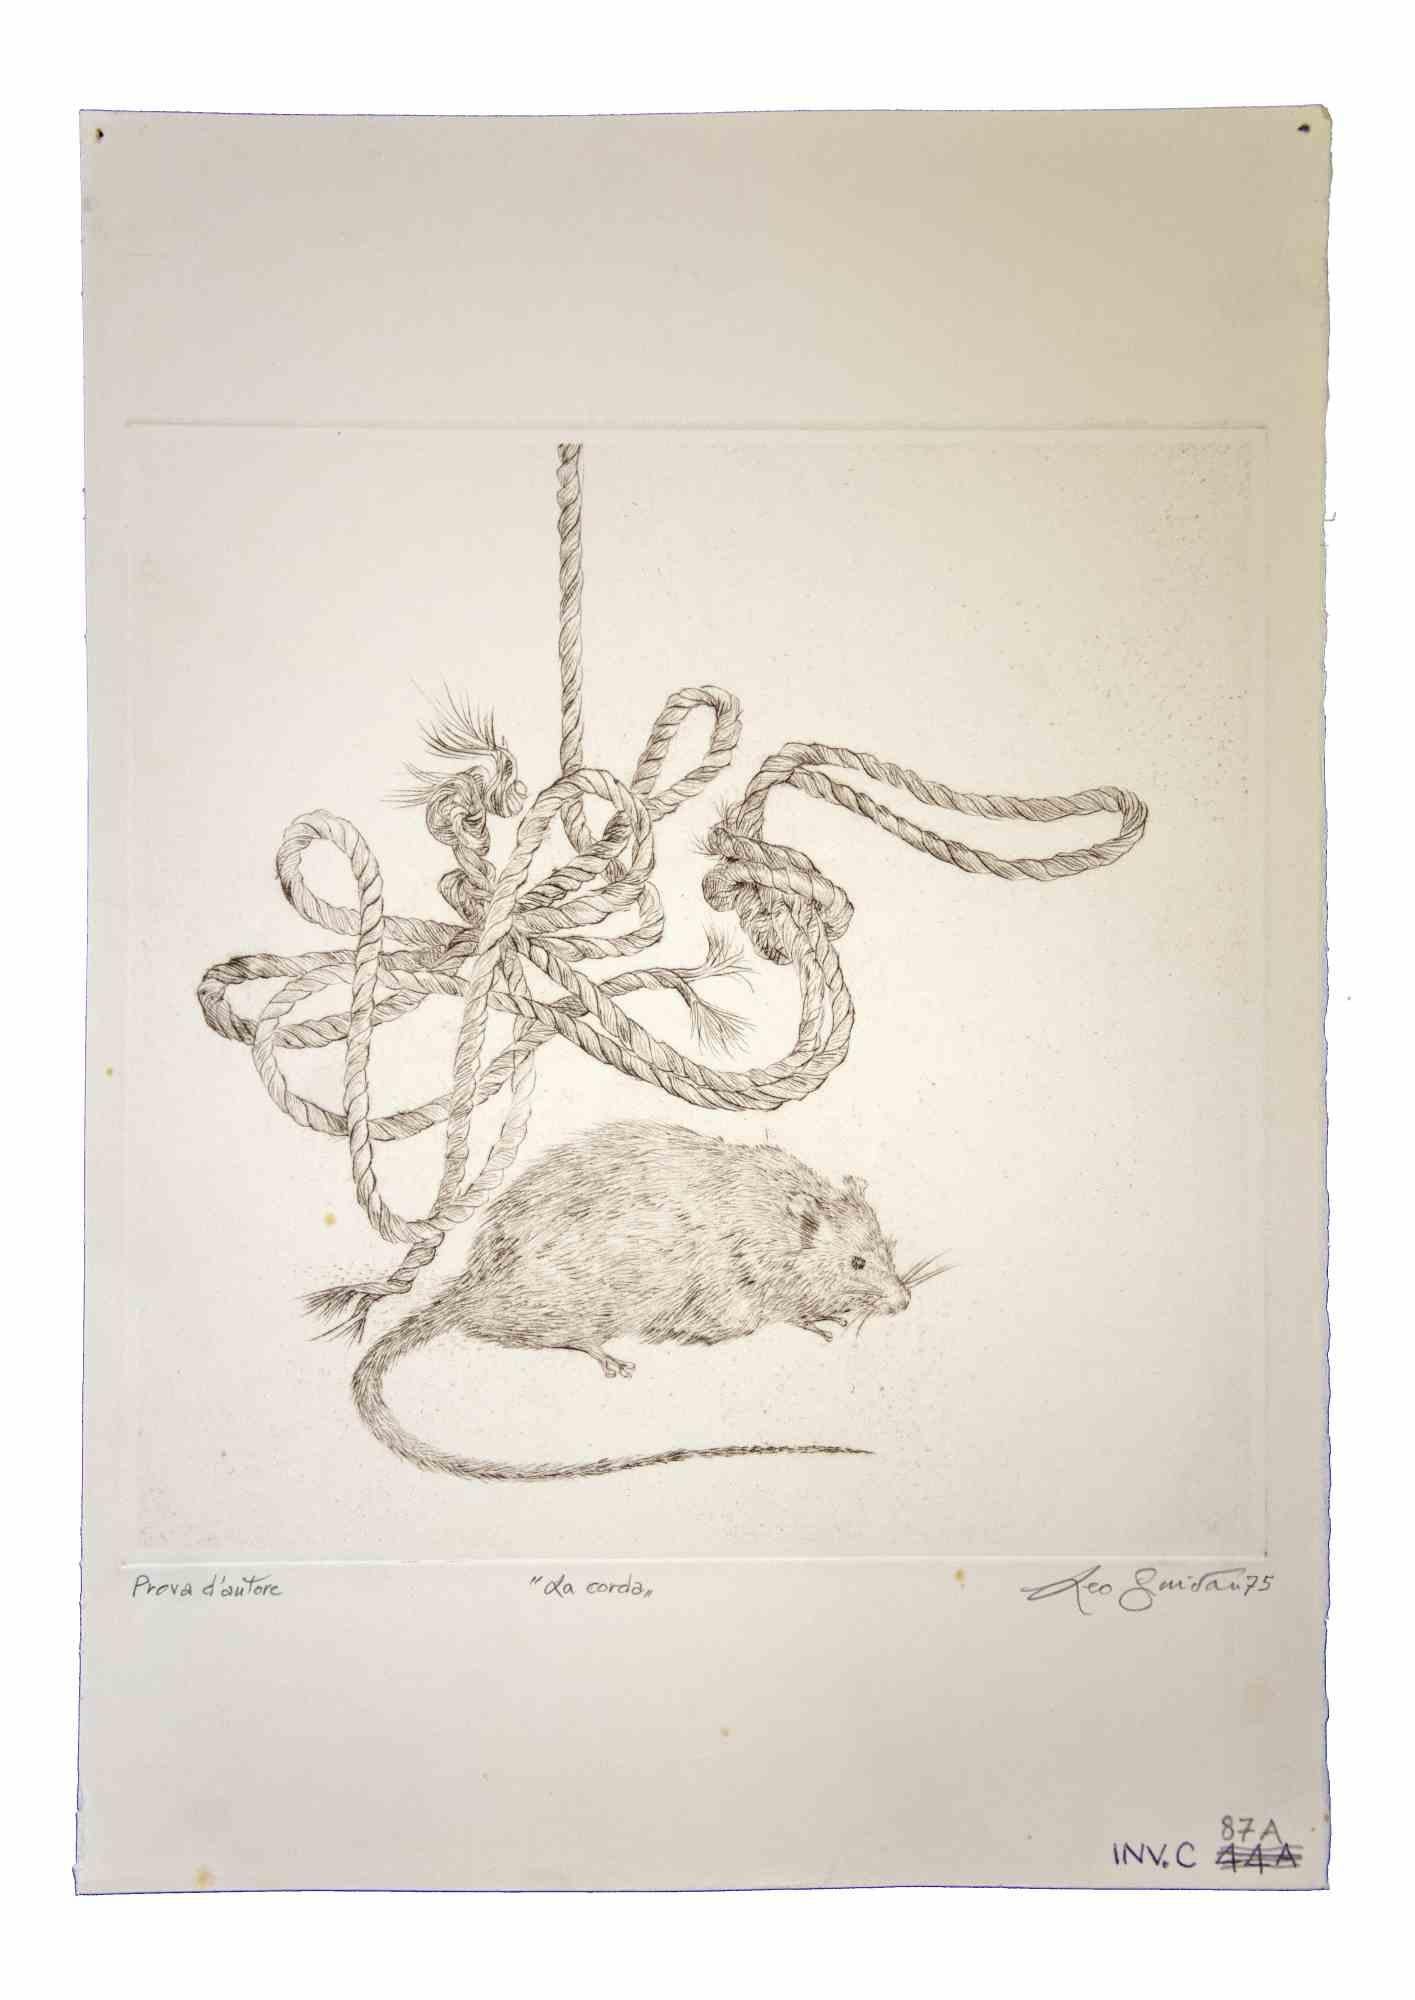 La corde est une œuvre d'art originale réalisée en 1975 par l'artiste contemporain italien  Leo Guida  (1992 - 2017).

Gravure originale sur papier.

Signé à la main en bas à droite, daté, épreuve d'artiste, titre en bas au centre.

Bon état avec de